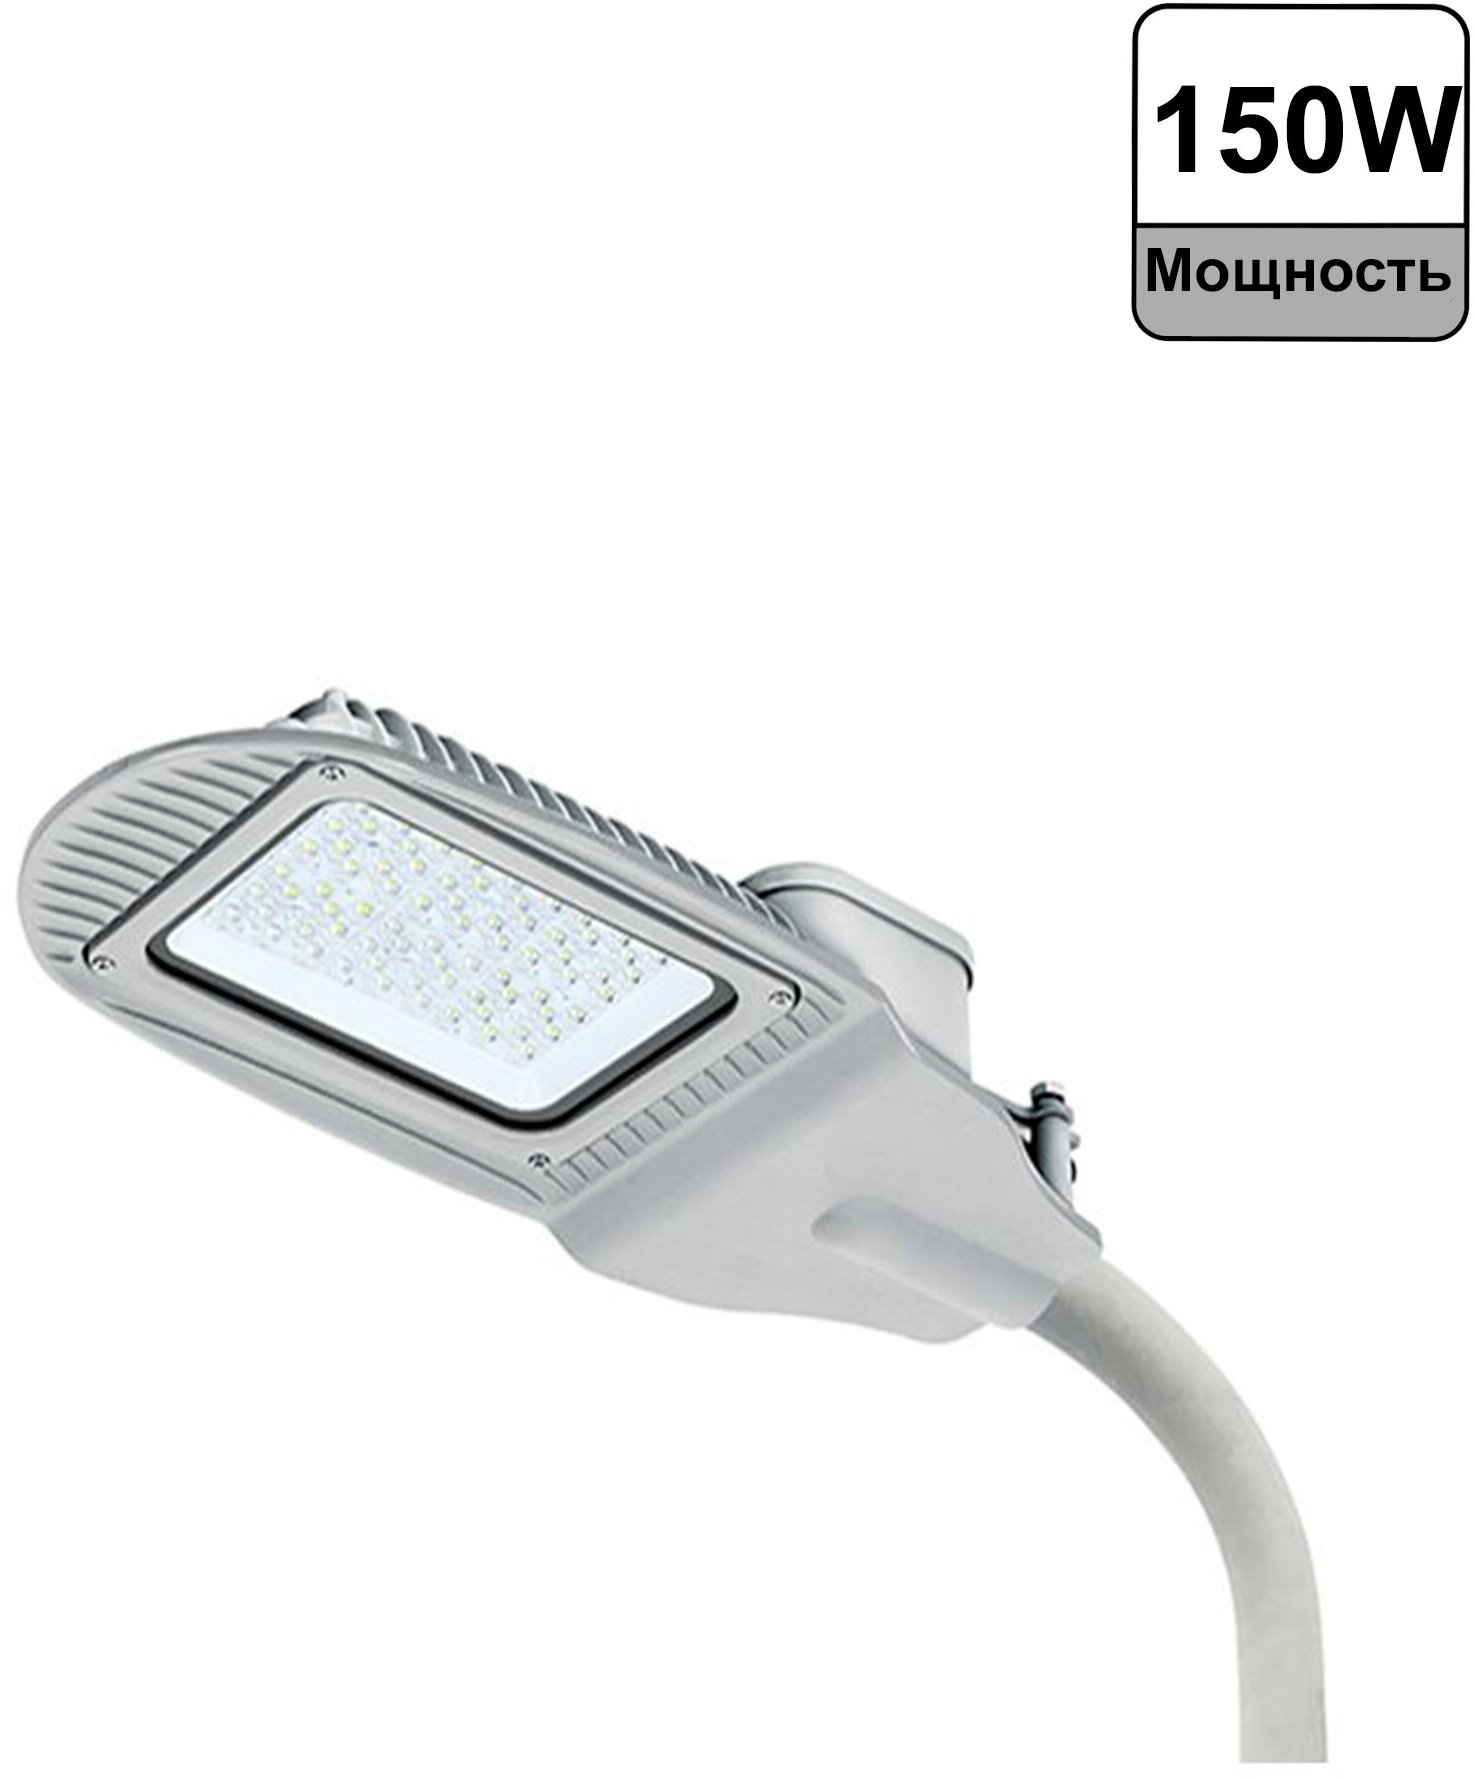 Уличный светодиодный светильник Wolta STL-150W01 150Вт, 5700 К, IP65 - фотография № 13